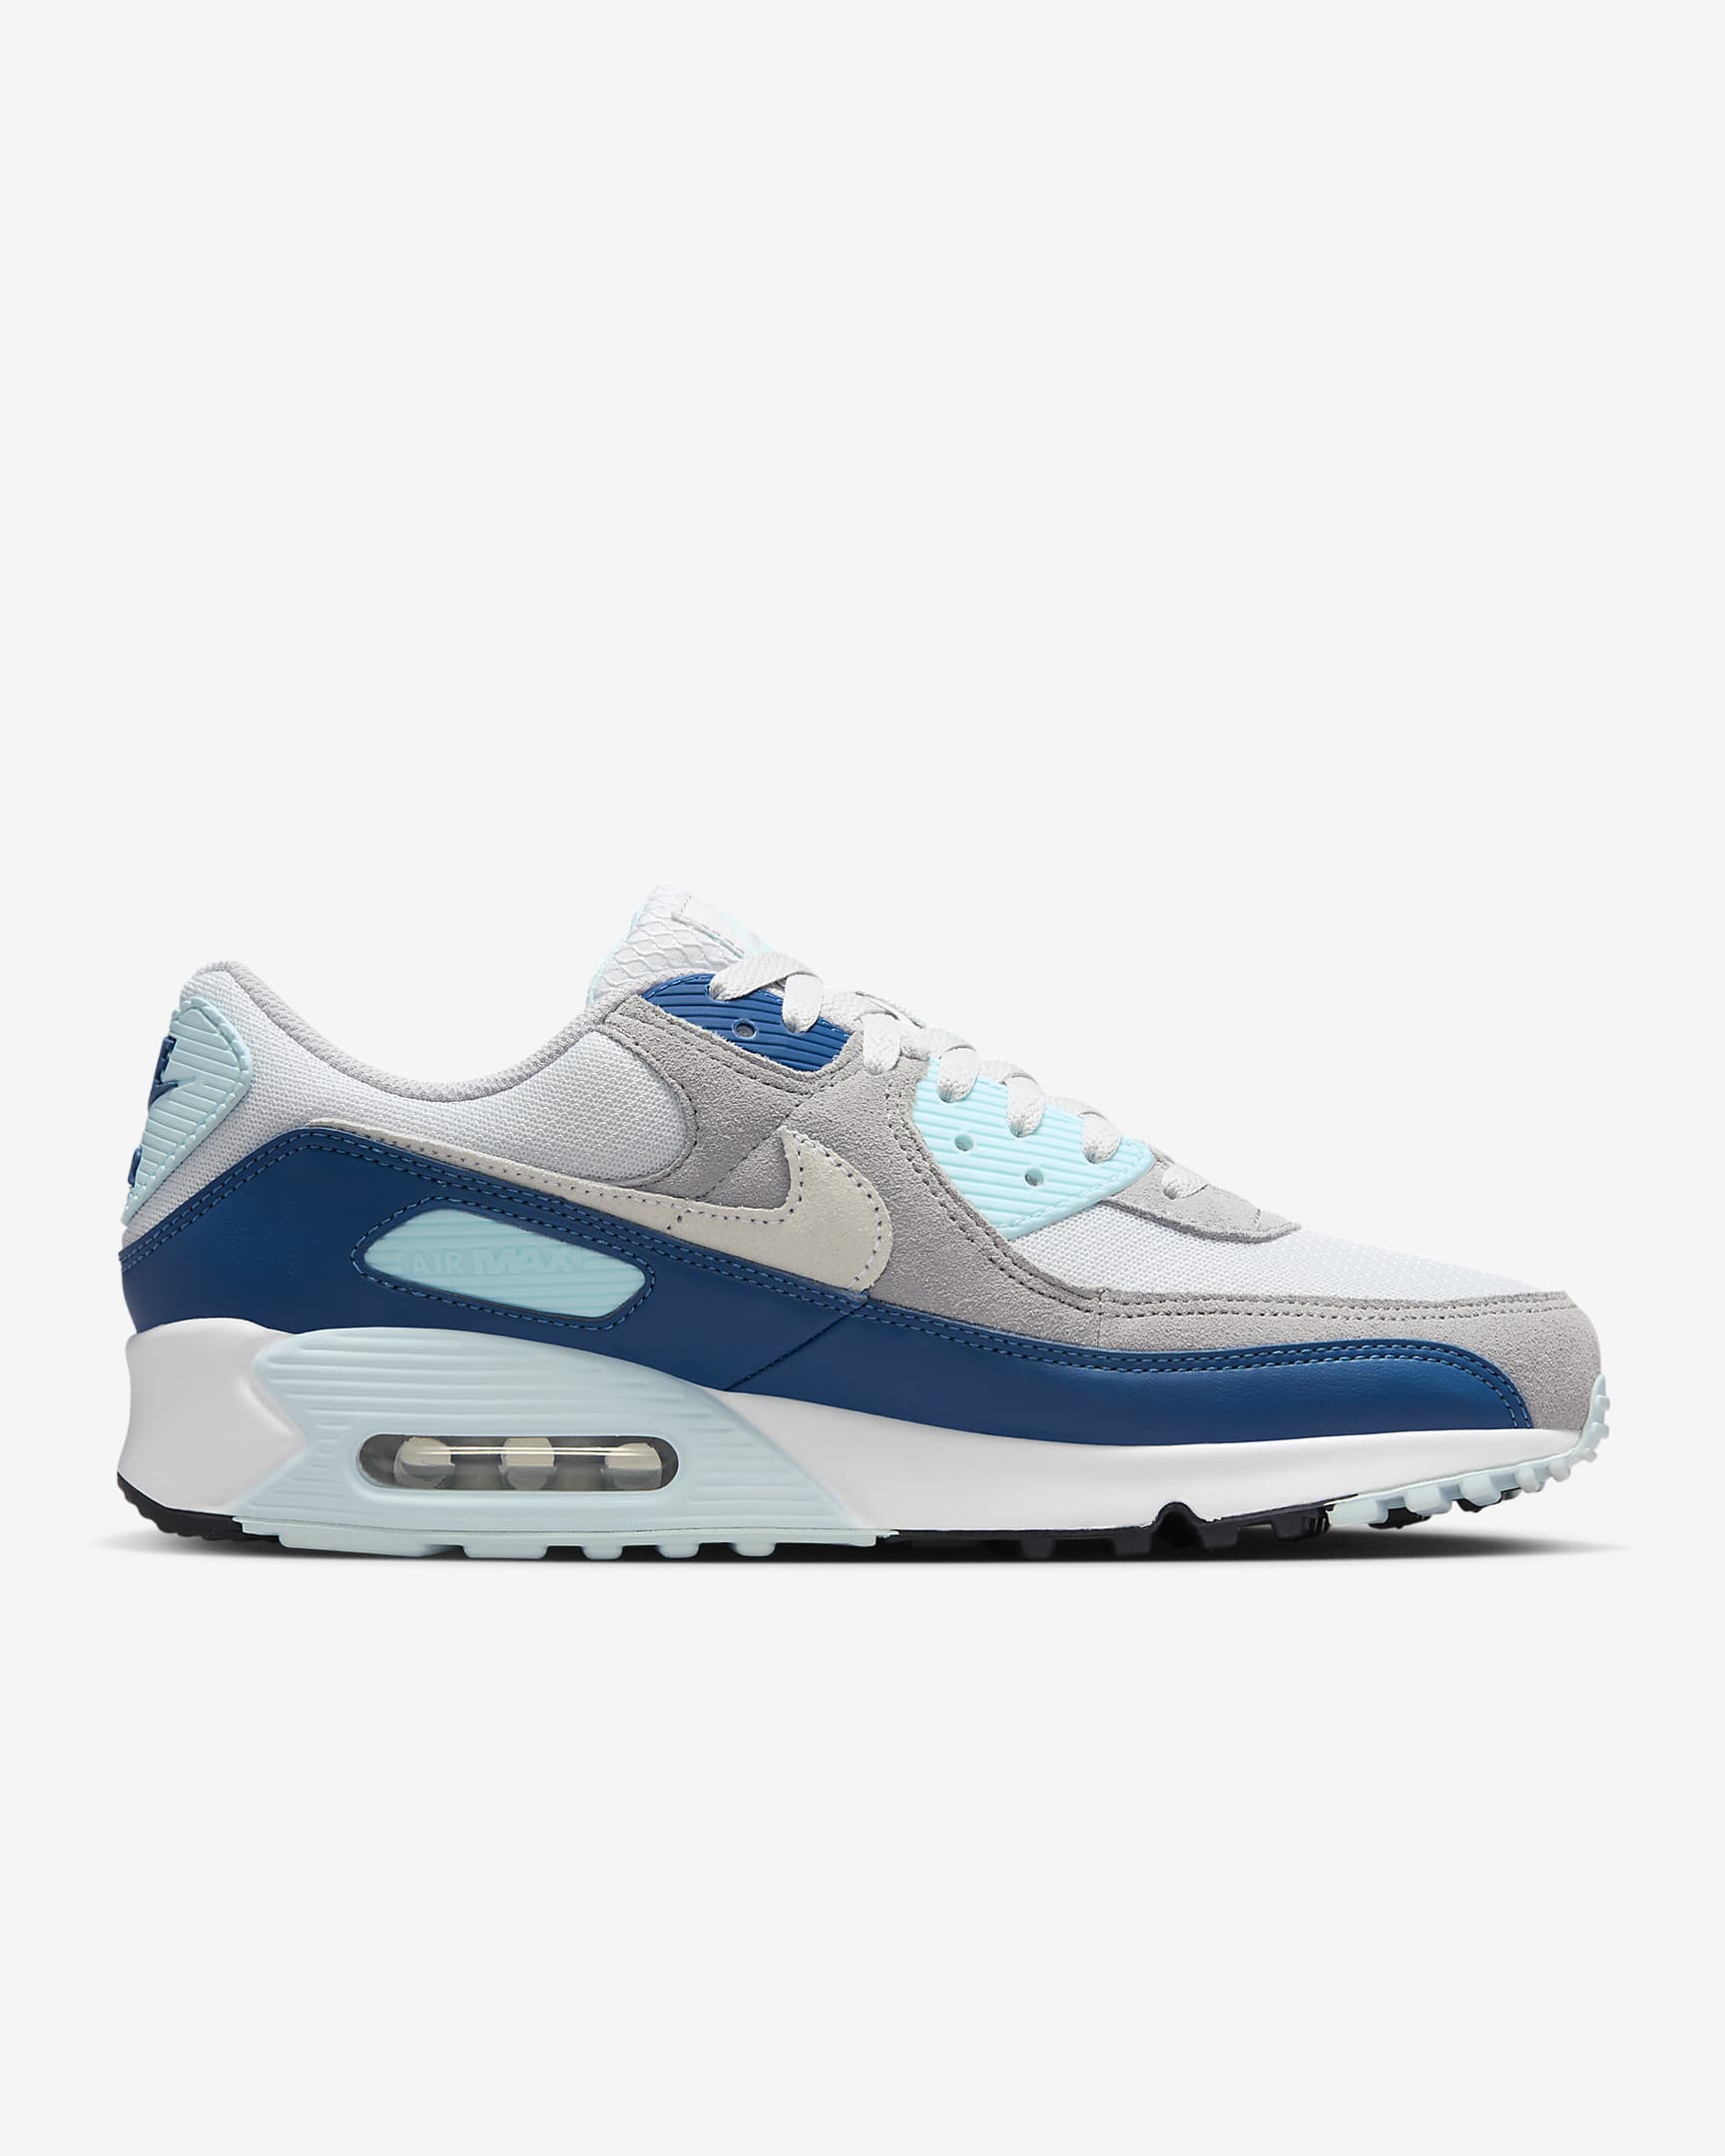 Nike Air Max 90 Men's Shoes - Pure Platinum/Glacier Blue/Court Blue/White